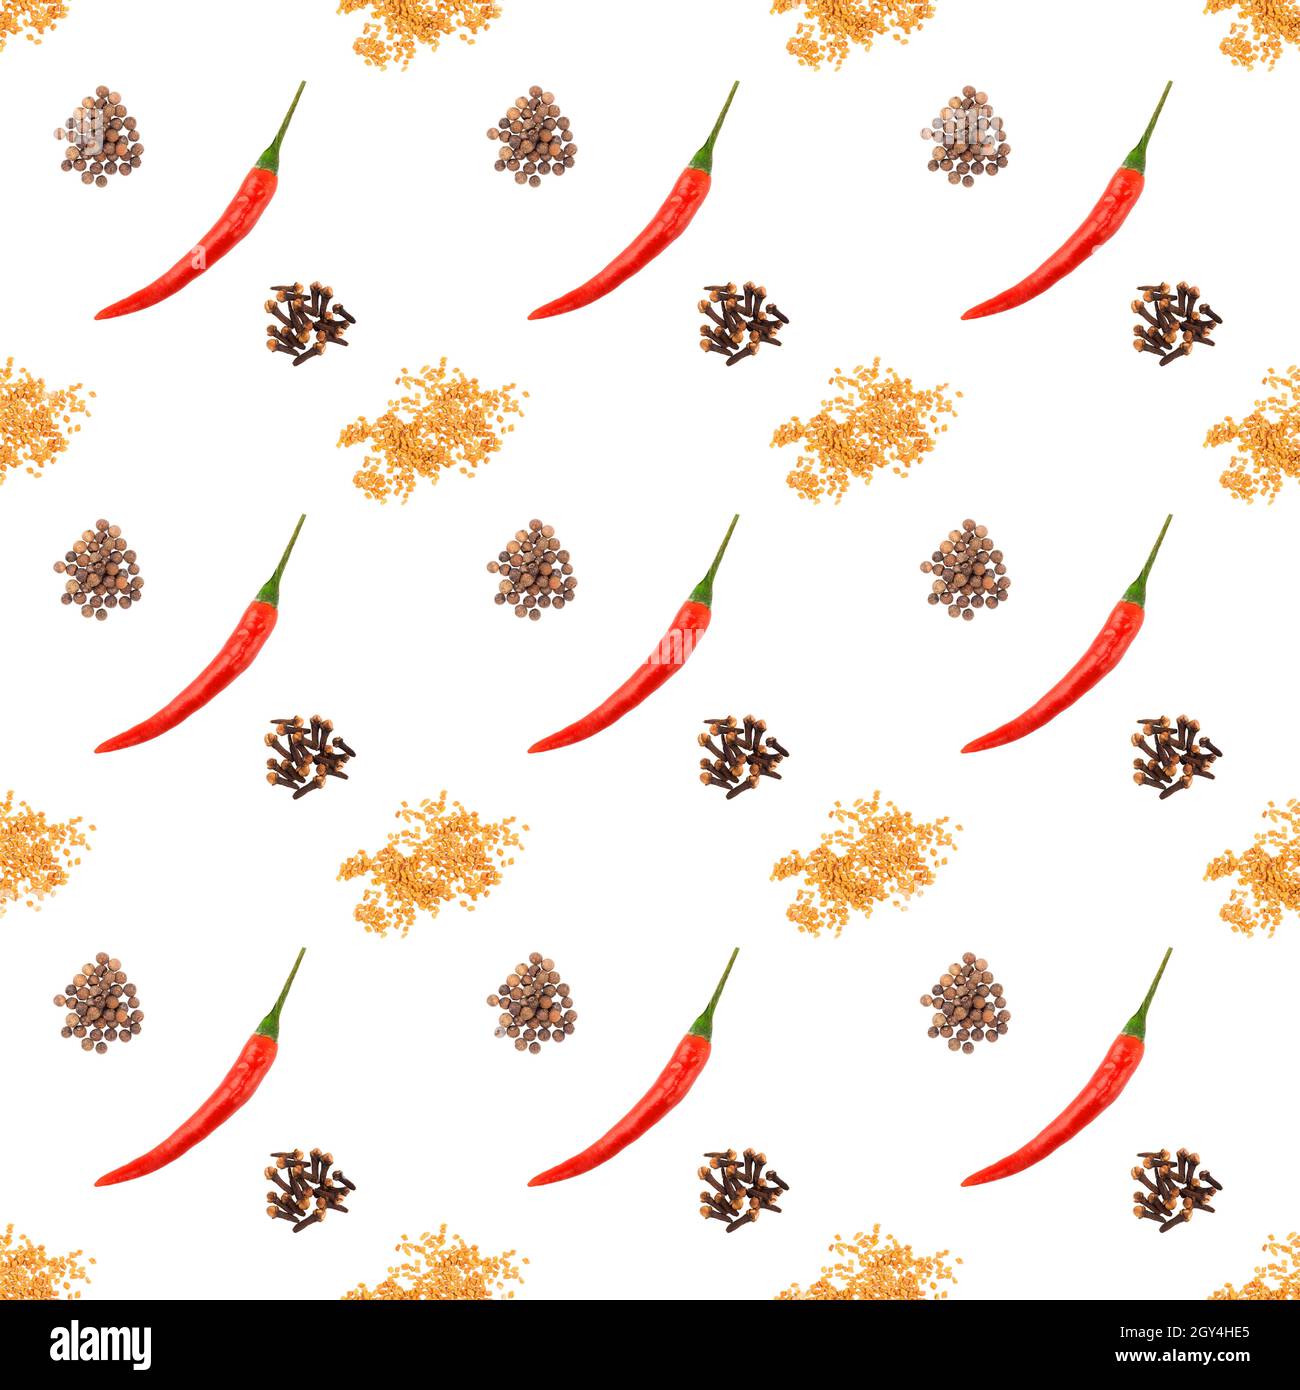 Nahtloses Gewürzmuster mit roten Chili-Paprika-Schoten, Gewürzhaufen, Bockshornklee, Allspice auf weißem Hintergrund. Köstliches Essen Konzept Stockfoto